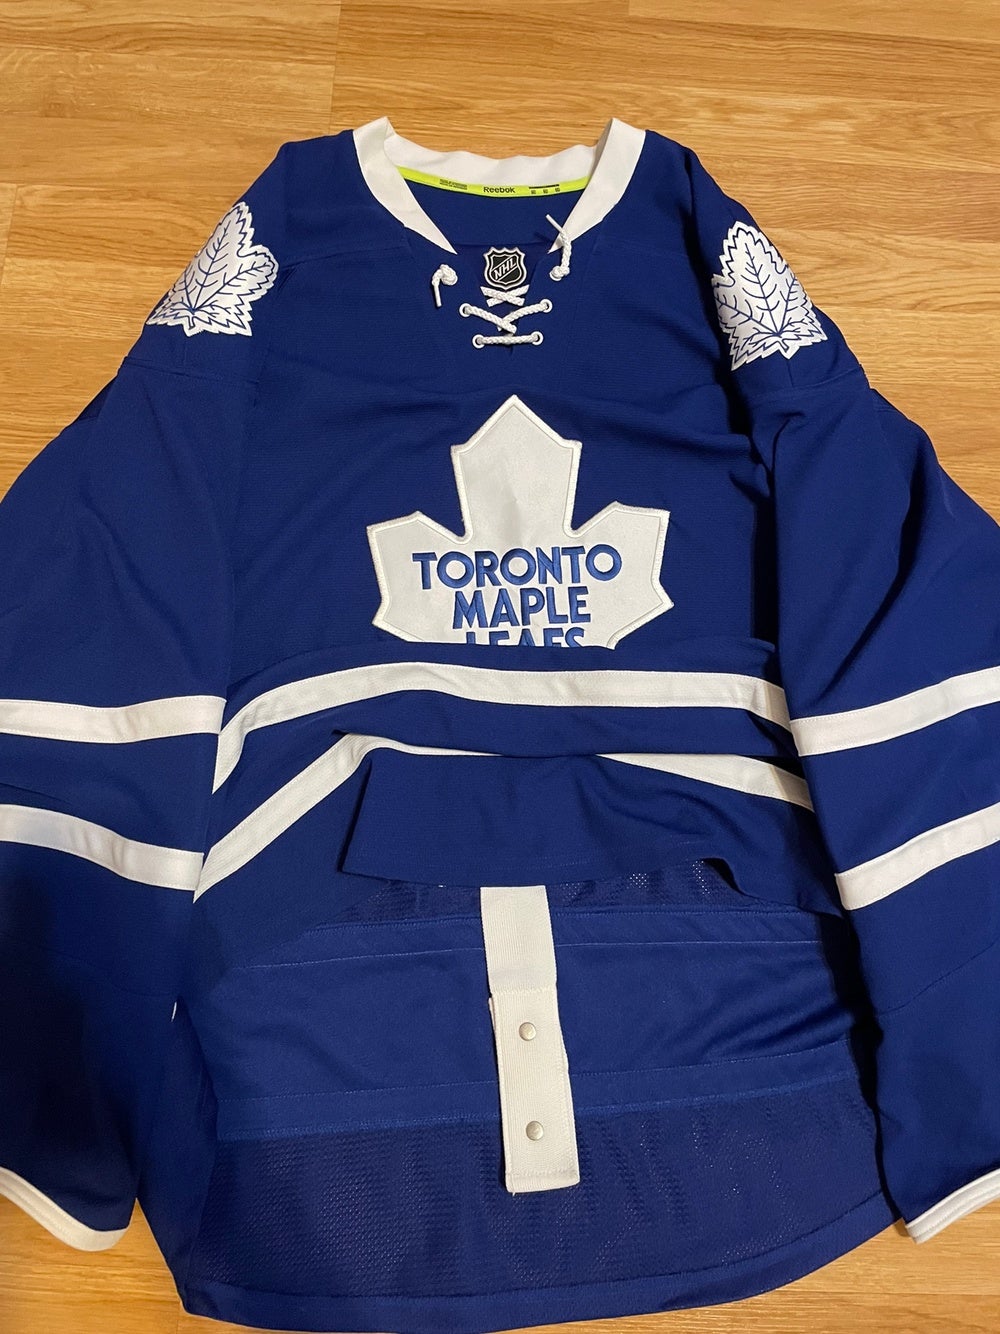 Reebok Toronto Maple Leafs NHL Fan Jerseys for sale